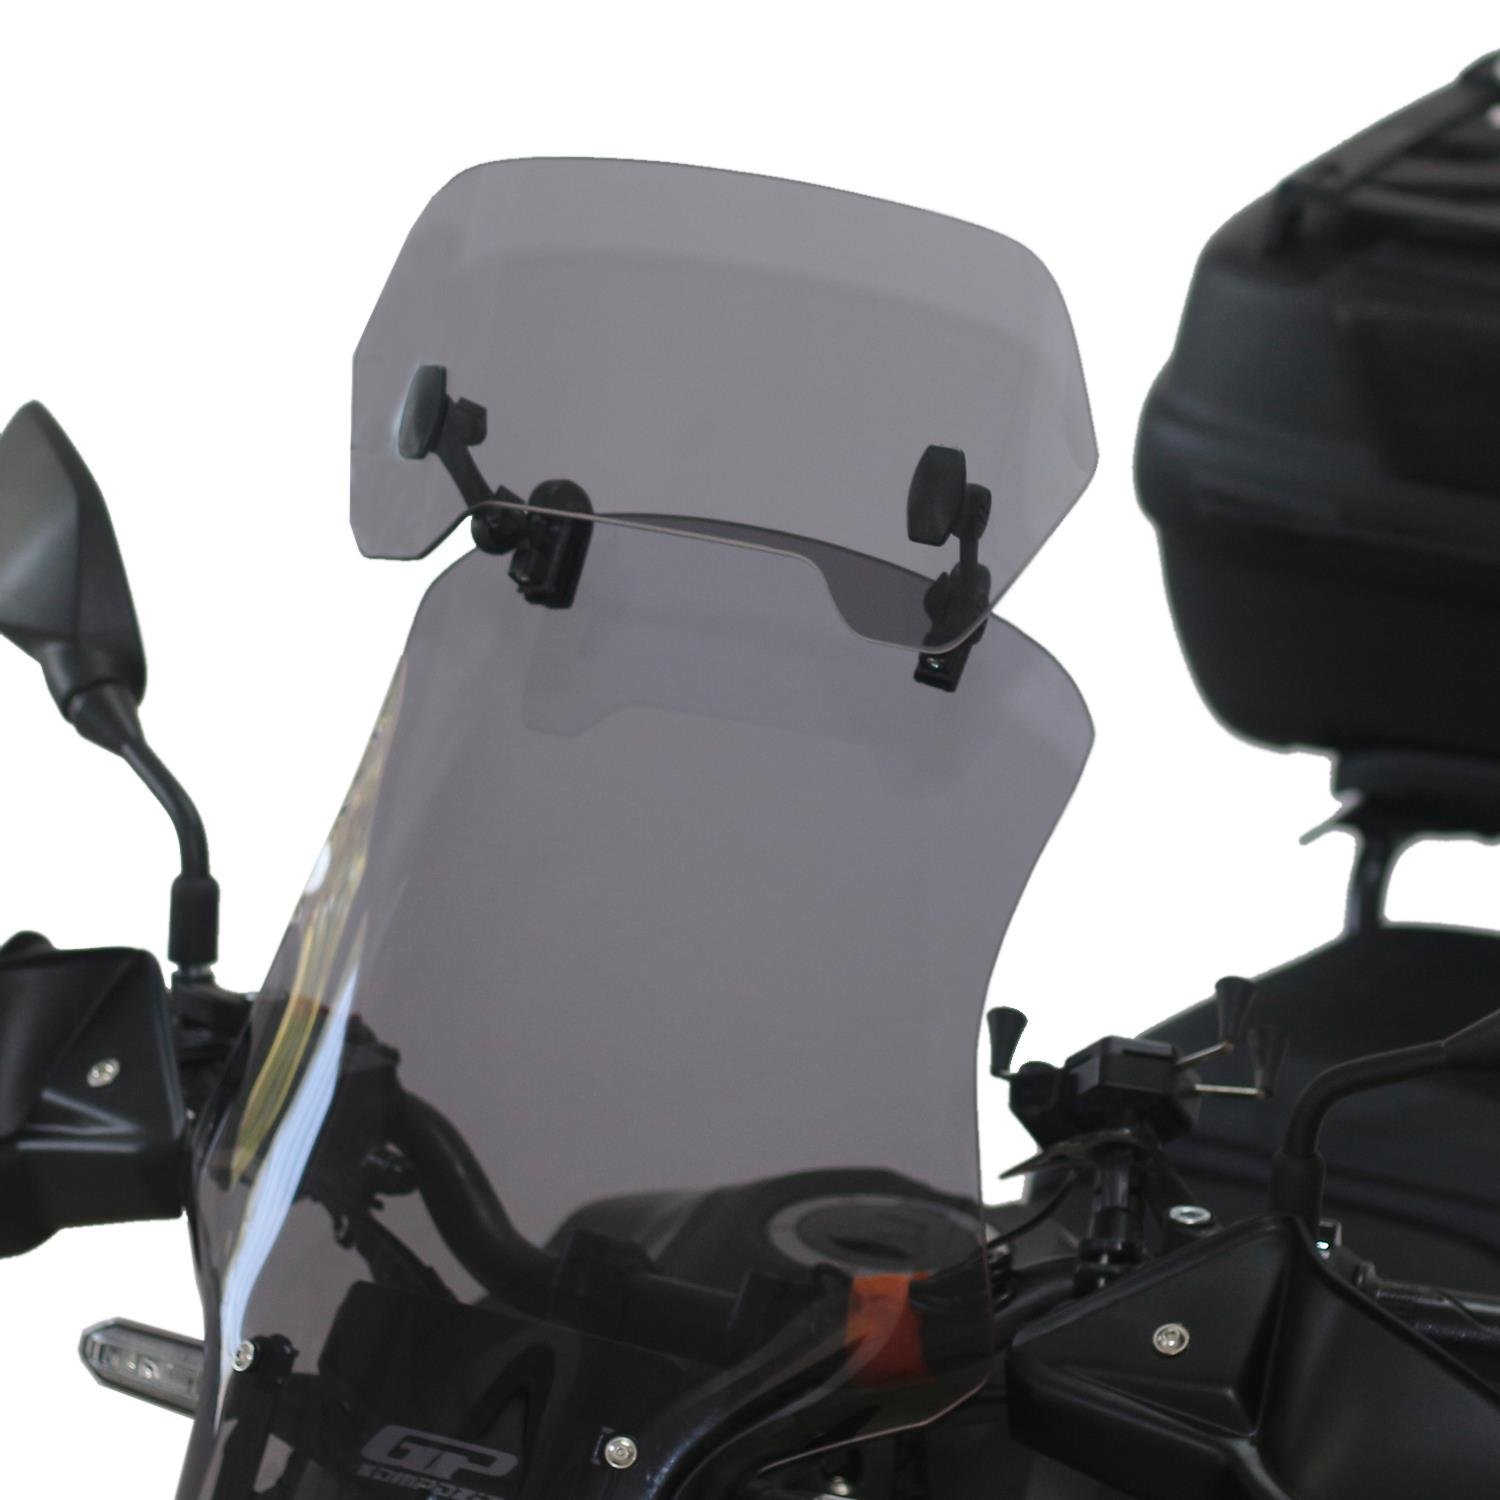 نصب طلق و بادگیر برای موتورسیکلت، یکی از دلایل افت شتاب موتورسیکلت